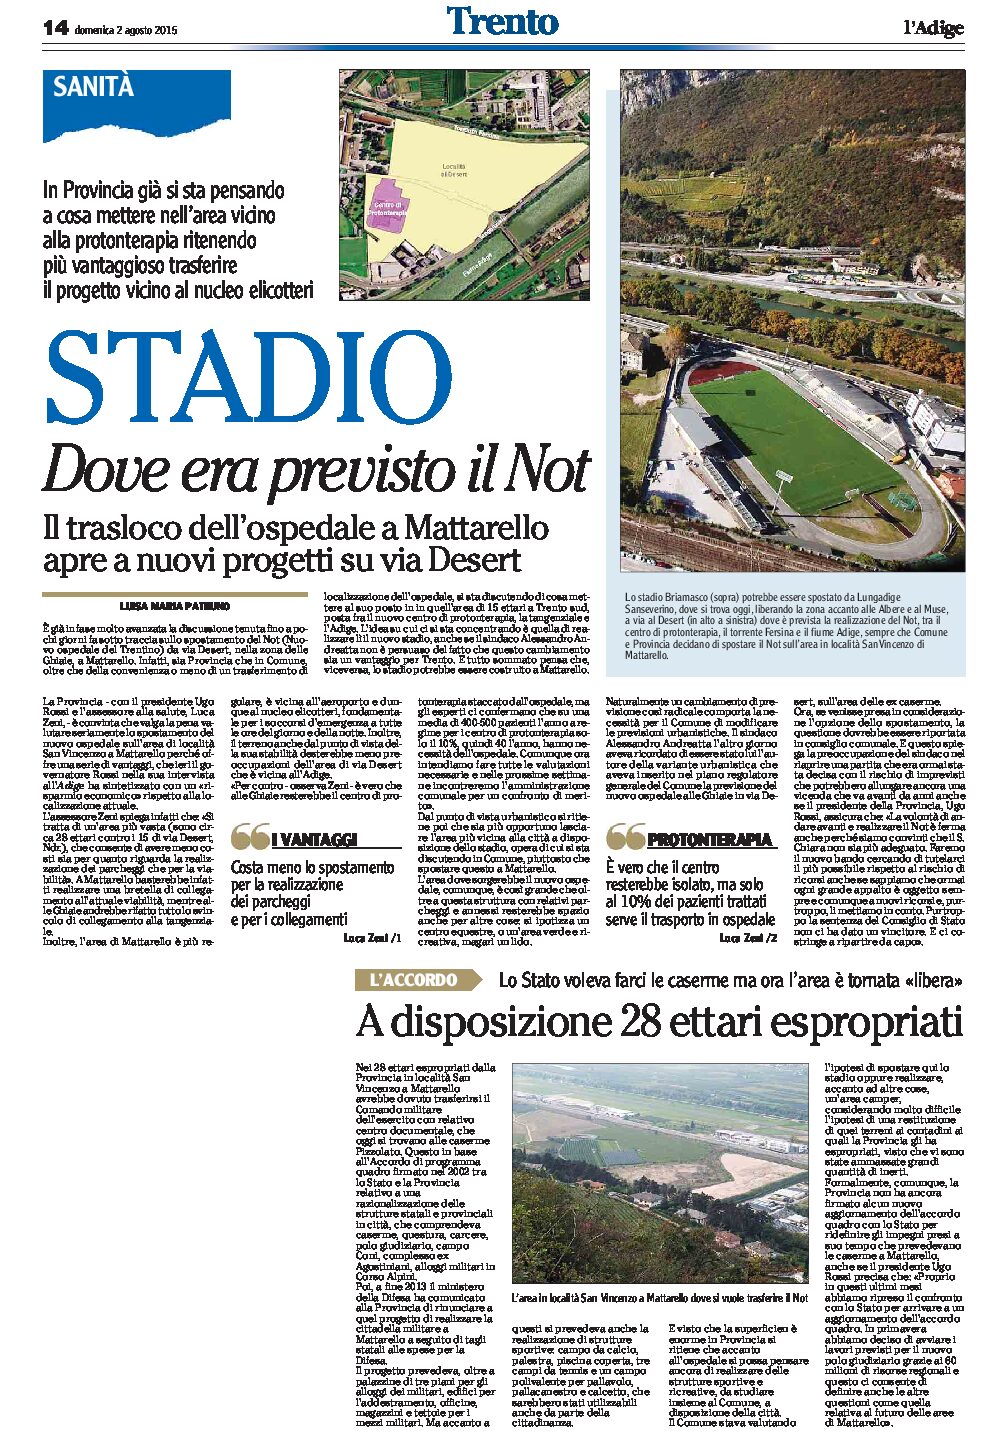 Trento: lo stadio dove era previsto il Not